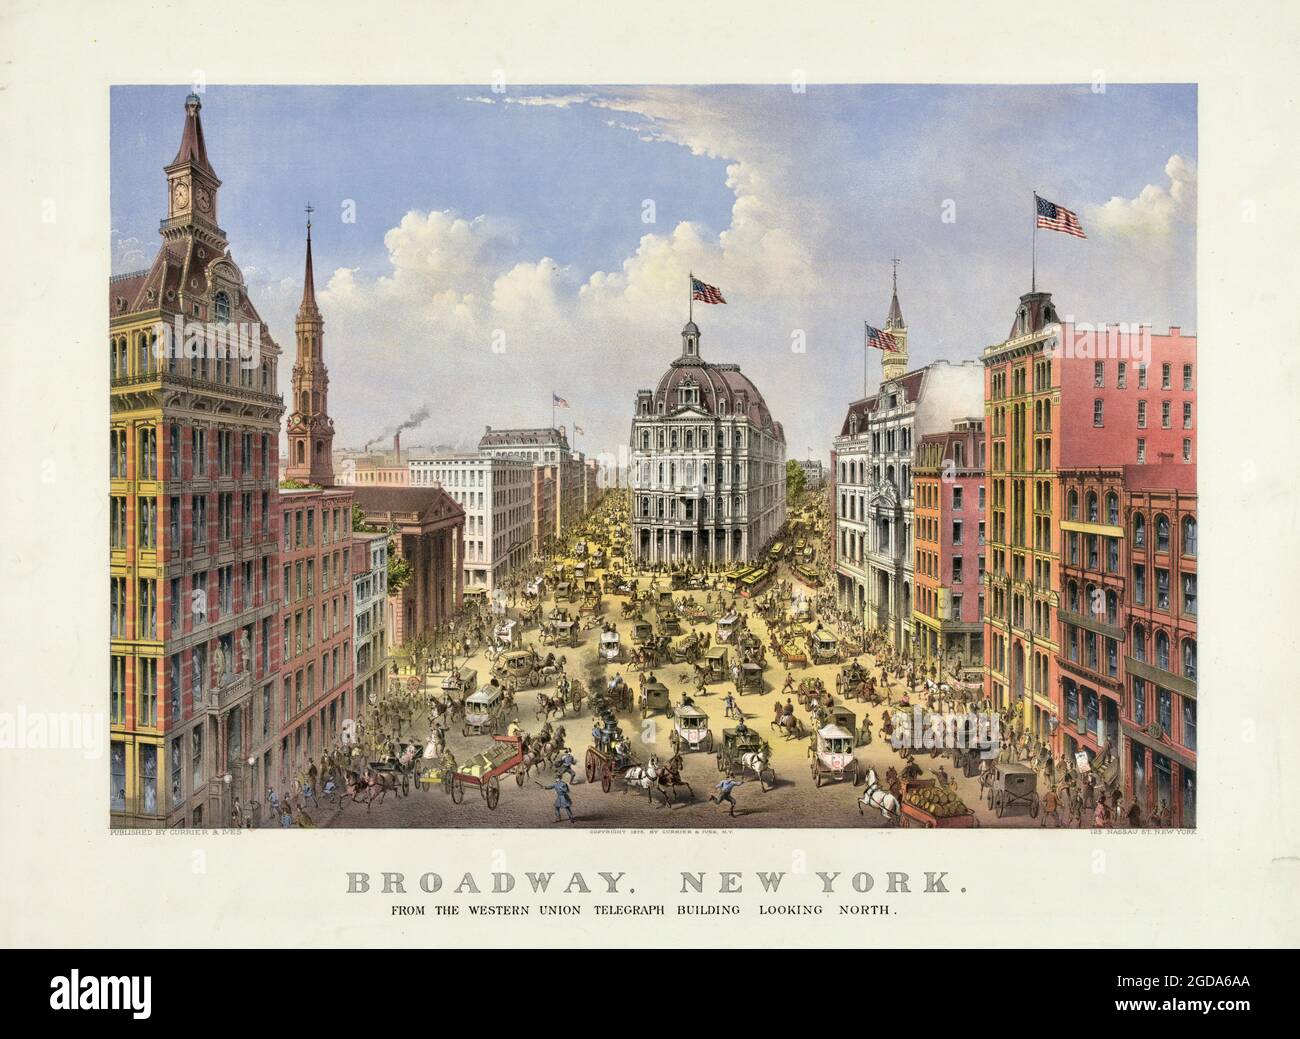 Broadway, New York- du bâtiment télégraphique WESTERN Union, en direction du nord - Currier & Ives - 1875 Banque D'Images